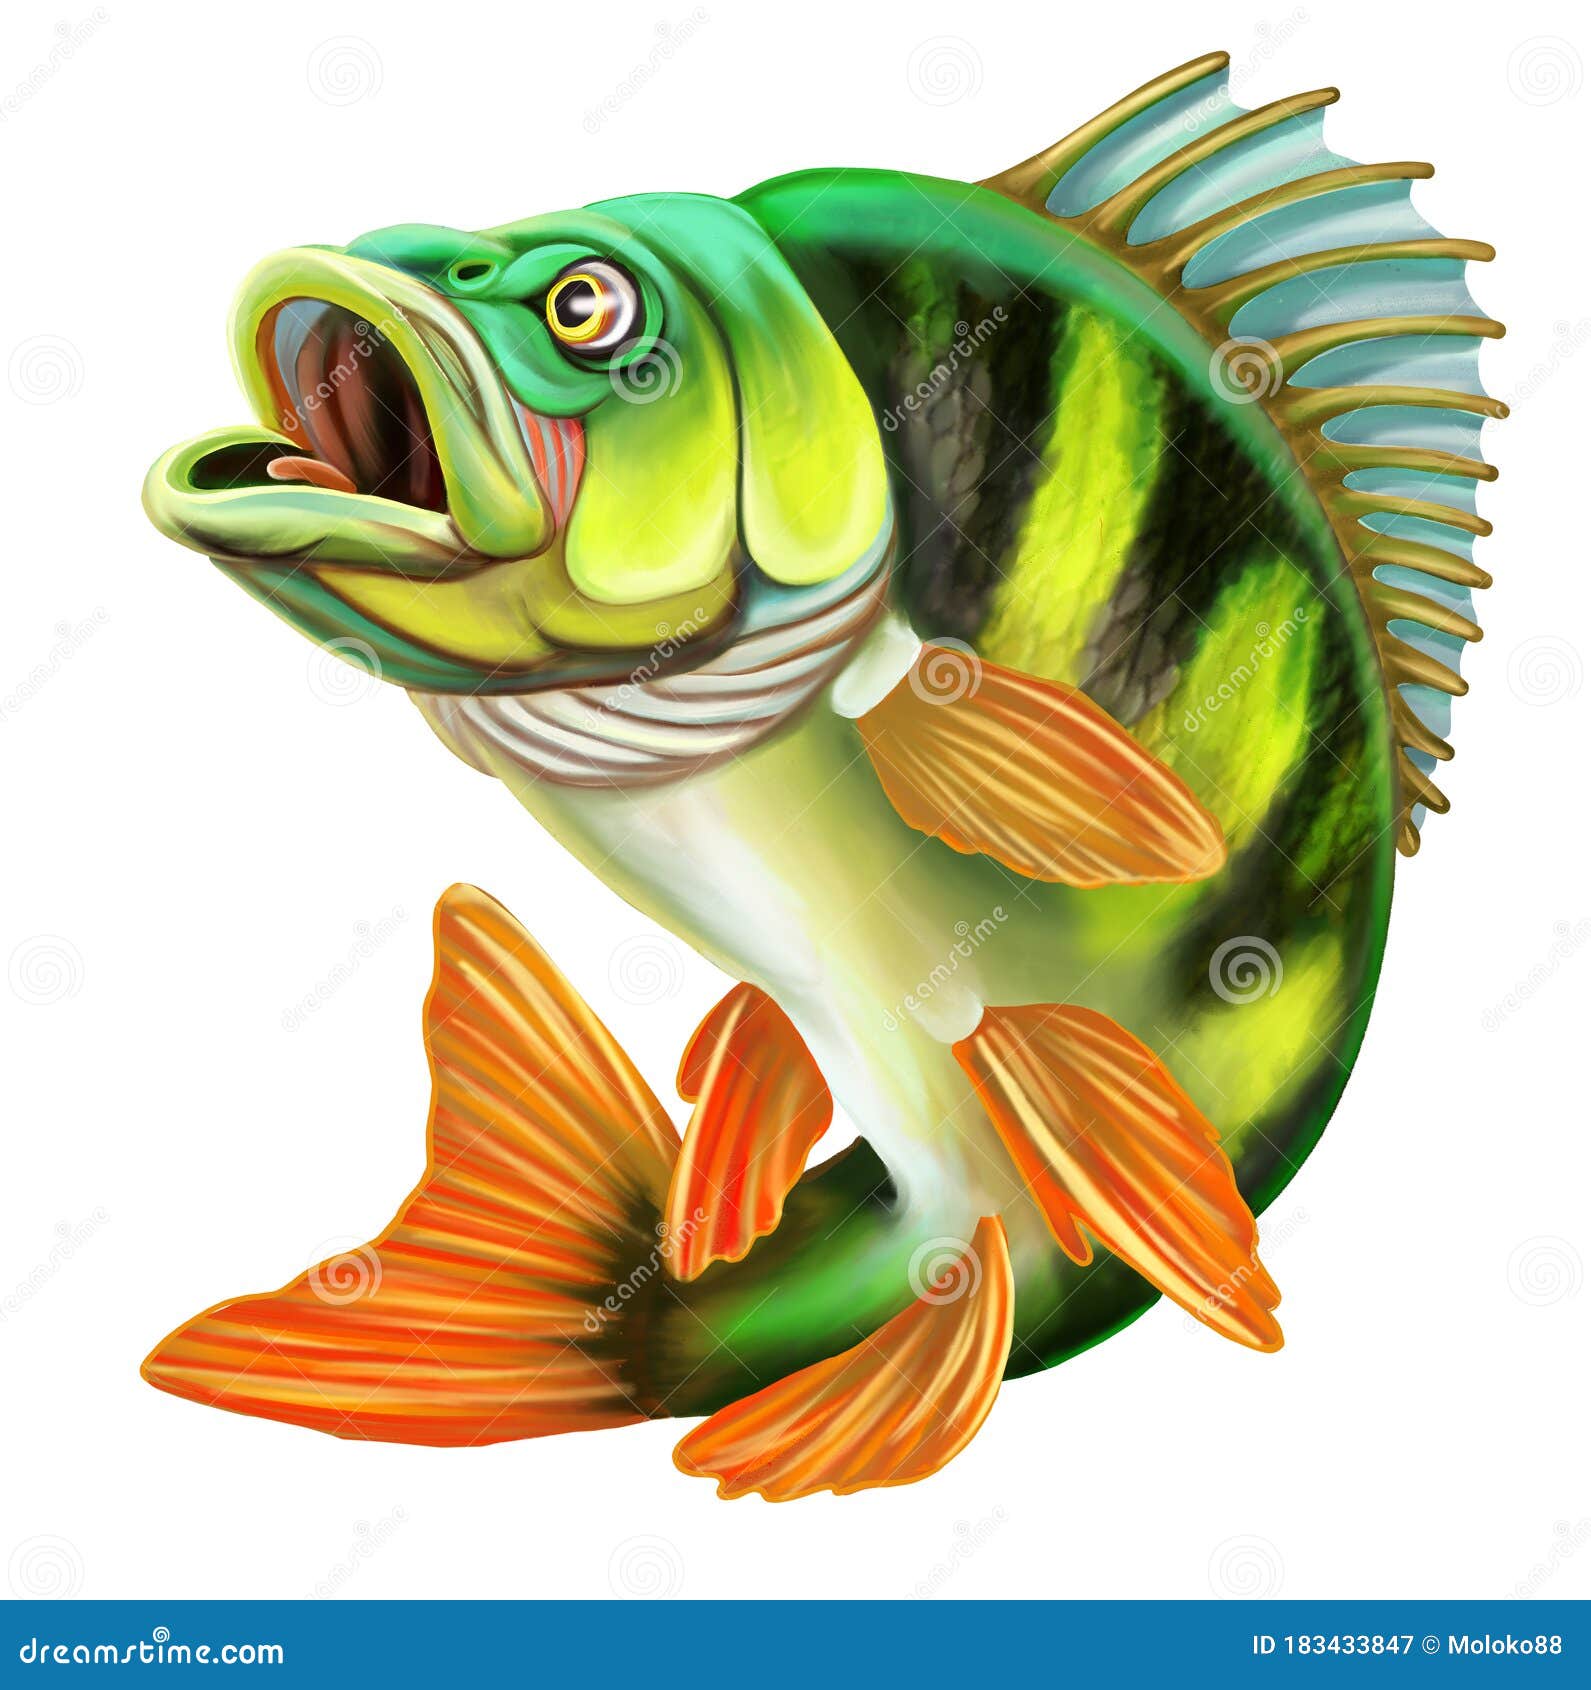 Perche poisson : 188 279 images, photos de stock, objets 3D et images  vectorielles